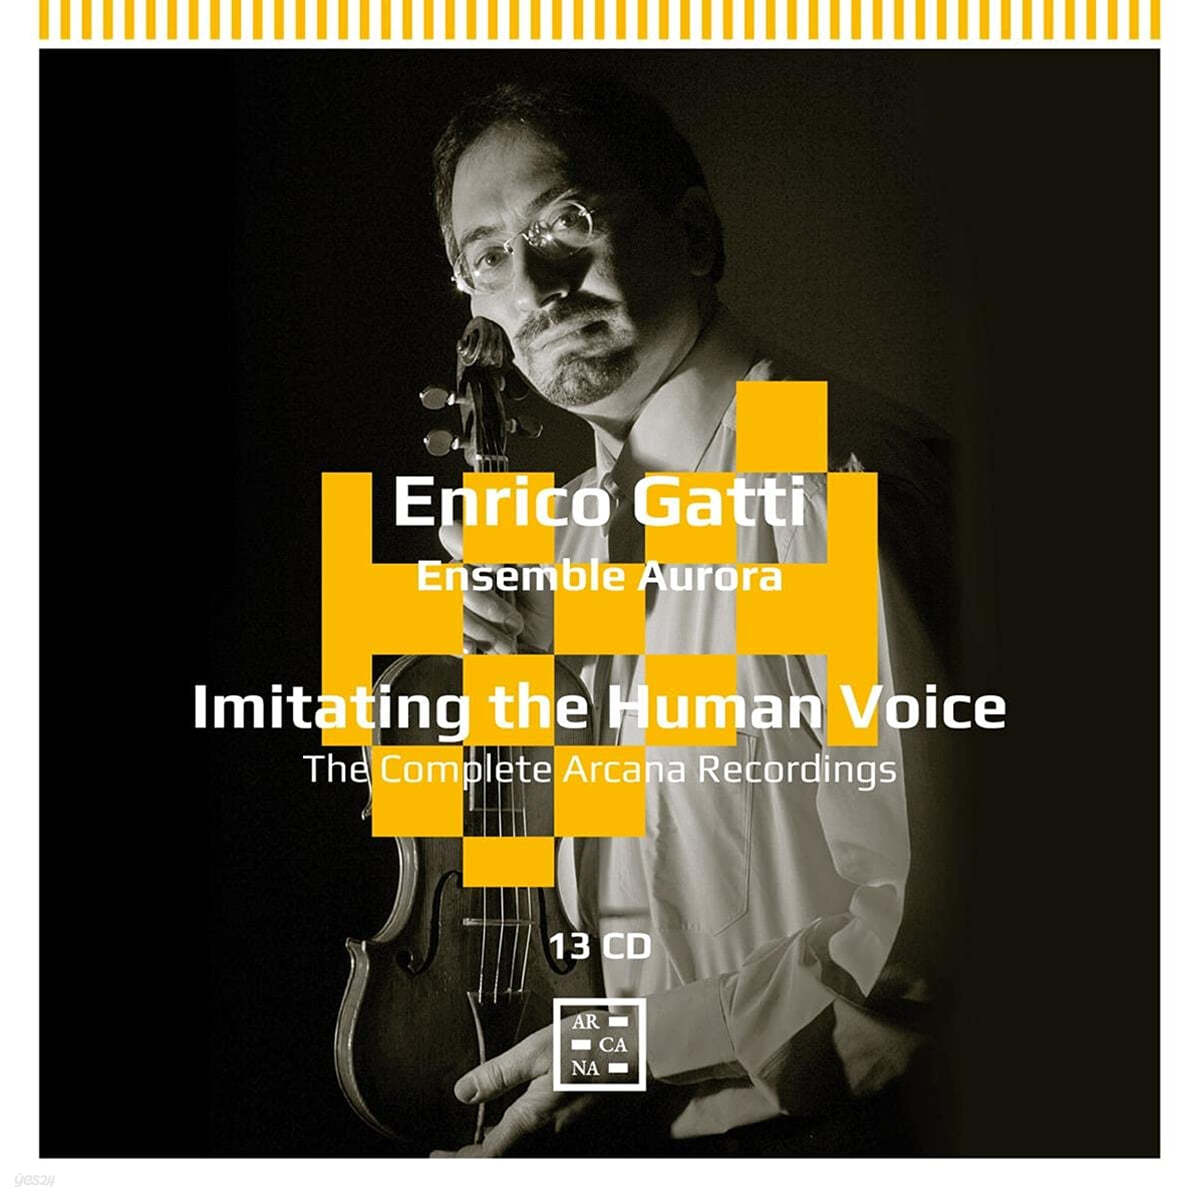 엔리코 가티 - 아르카나 레코딩 전집 (Enrico Gatti - The Complete Arcana Recordings: Imitating the Human Voice)